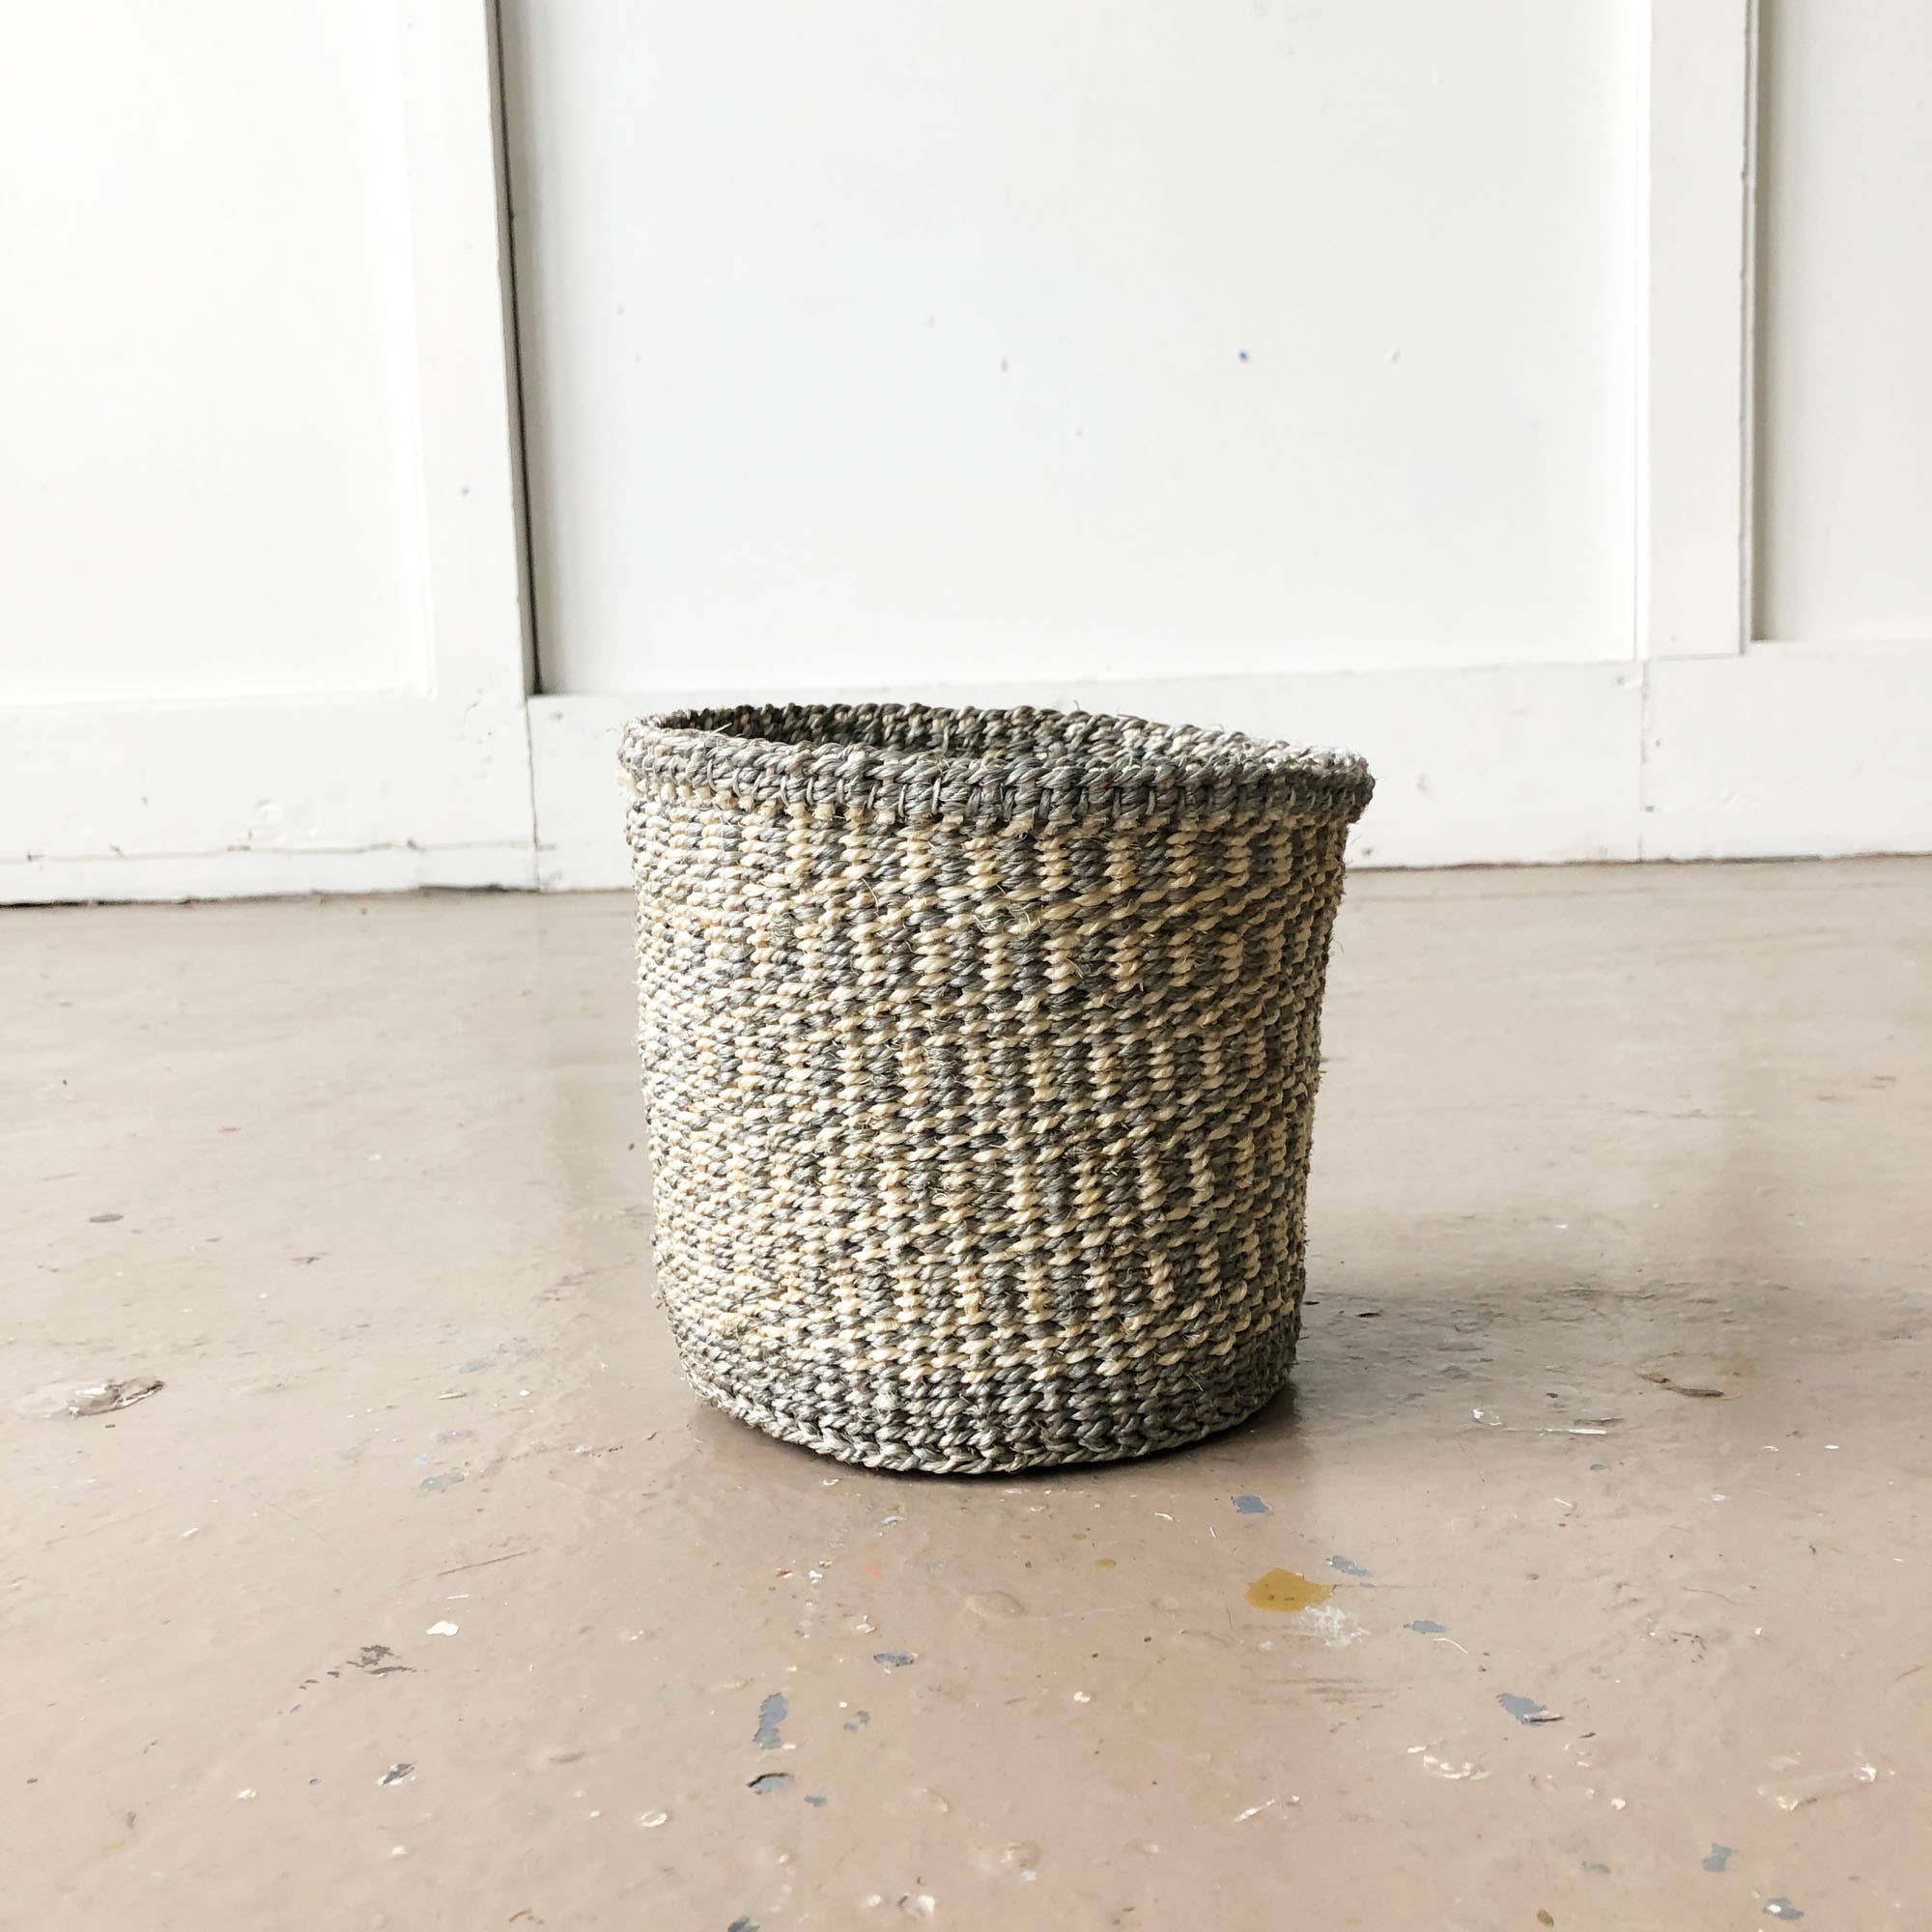 Storage Plant Baskets: Sand & Stone - XS